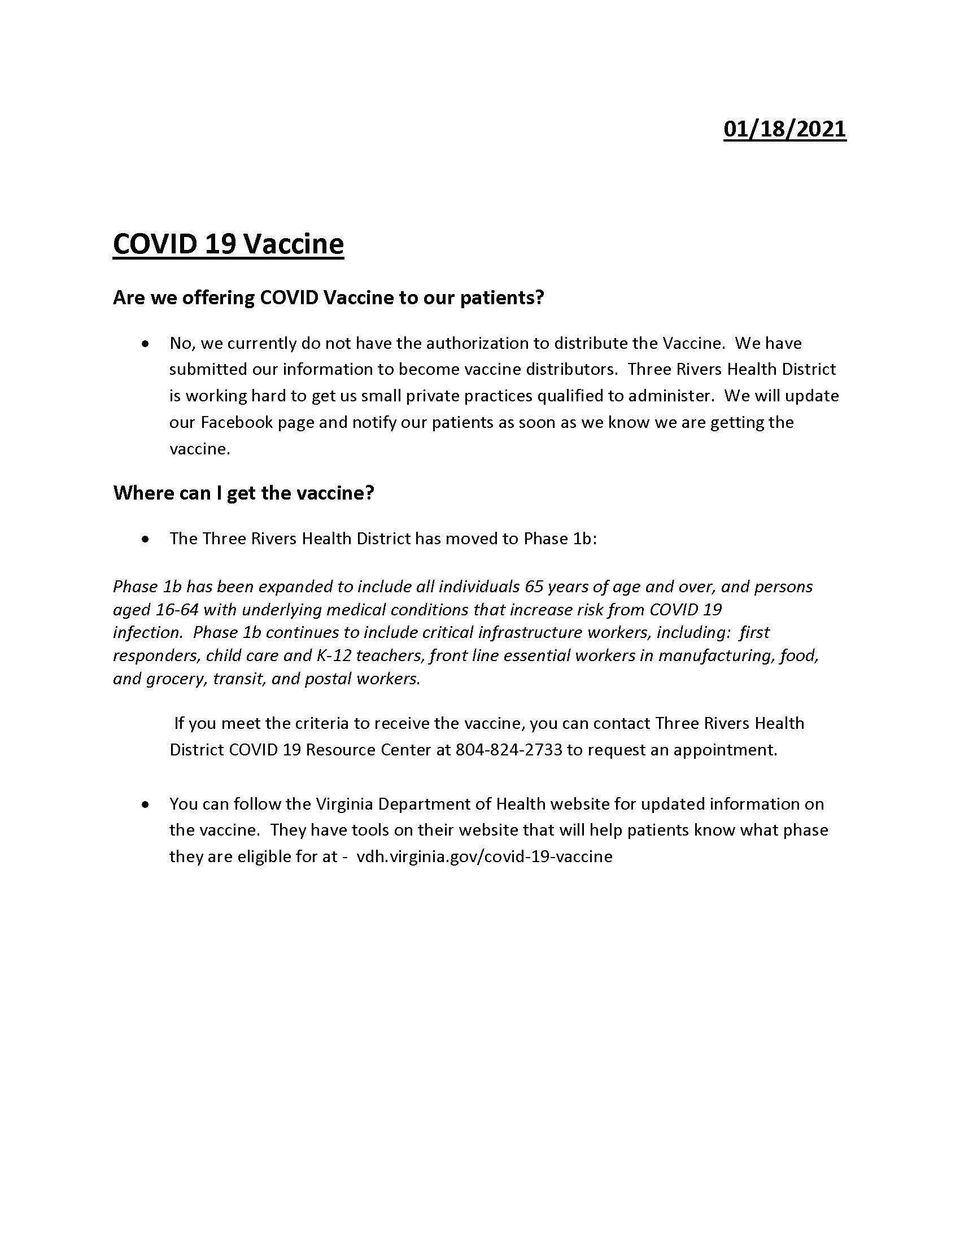 Covid 19 vaccine 20210118